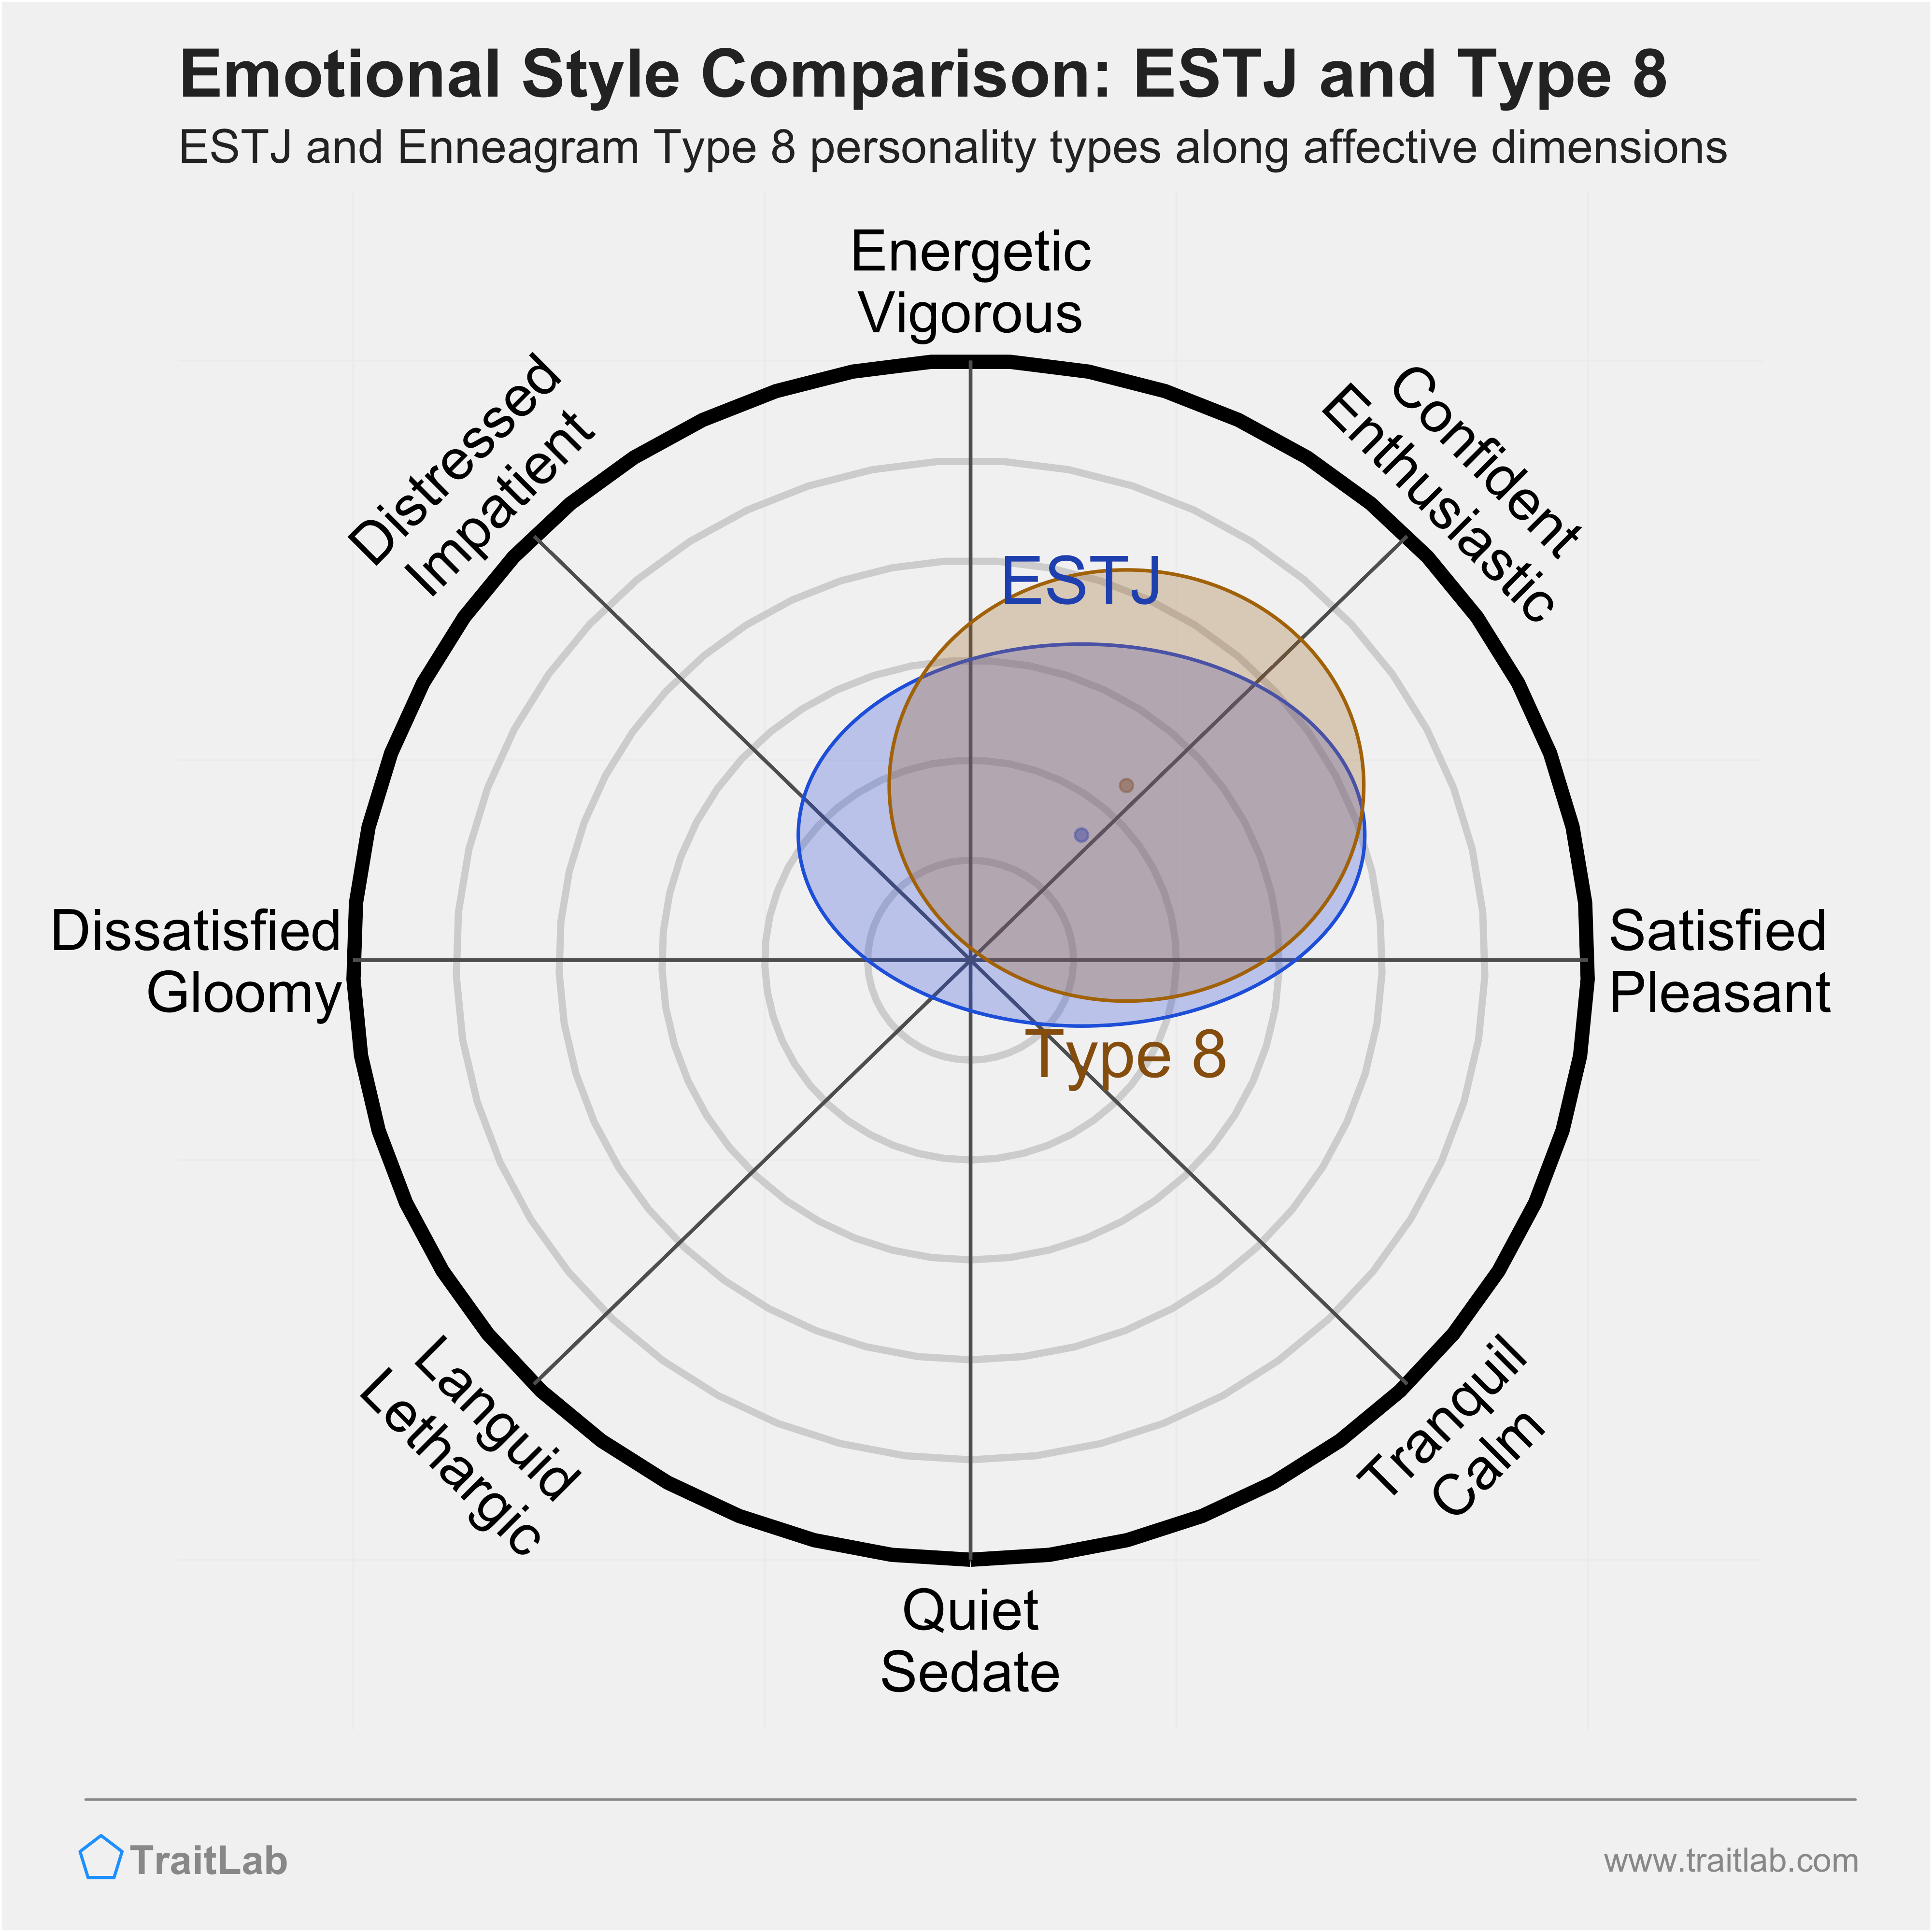 ESTJ and Type 8 comparison across emotional (affective) dimensions